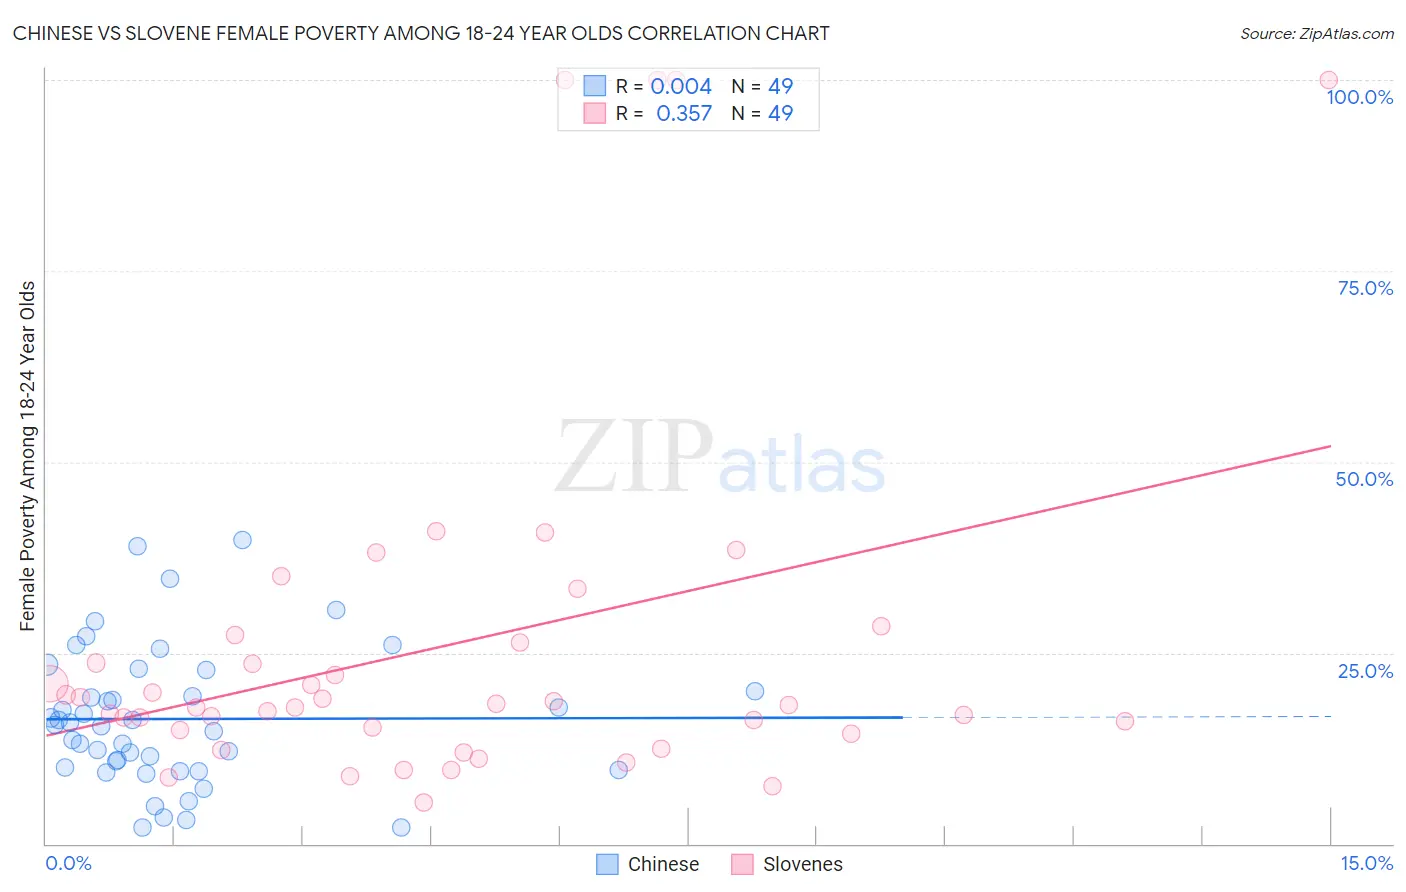 Chinese vs Slovene Female Poverty Among 18-24 Year Olds